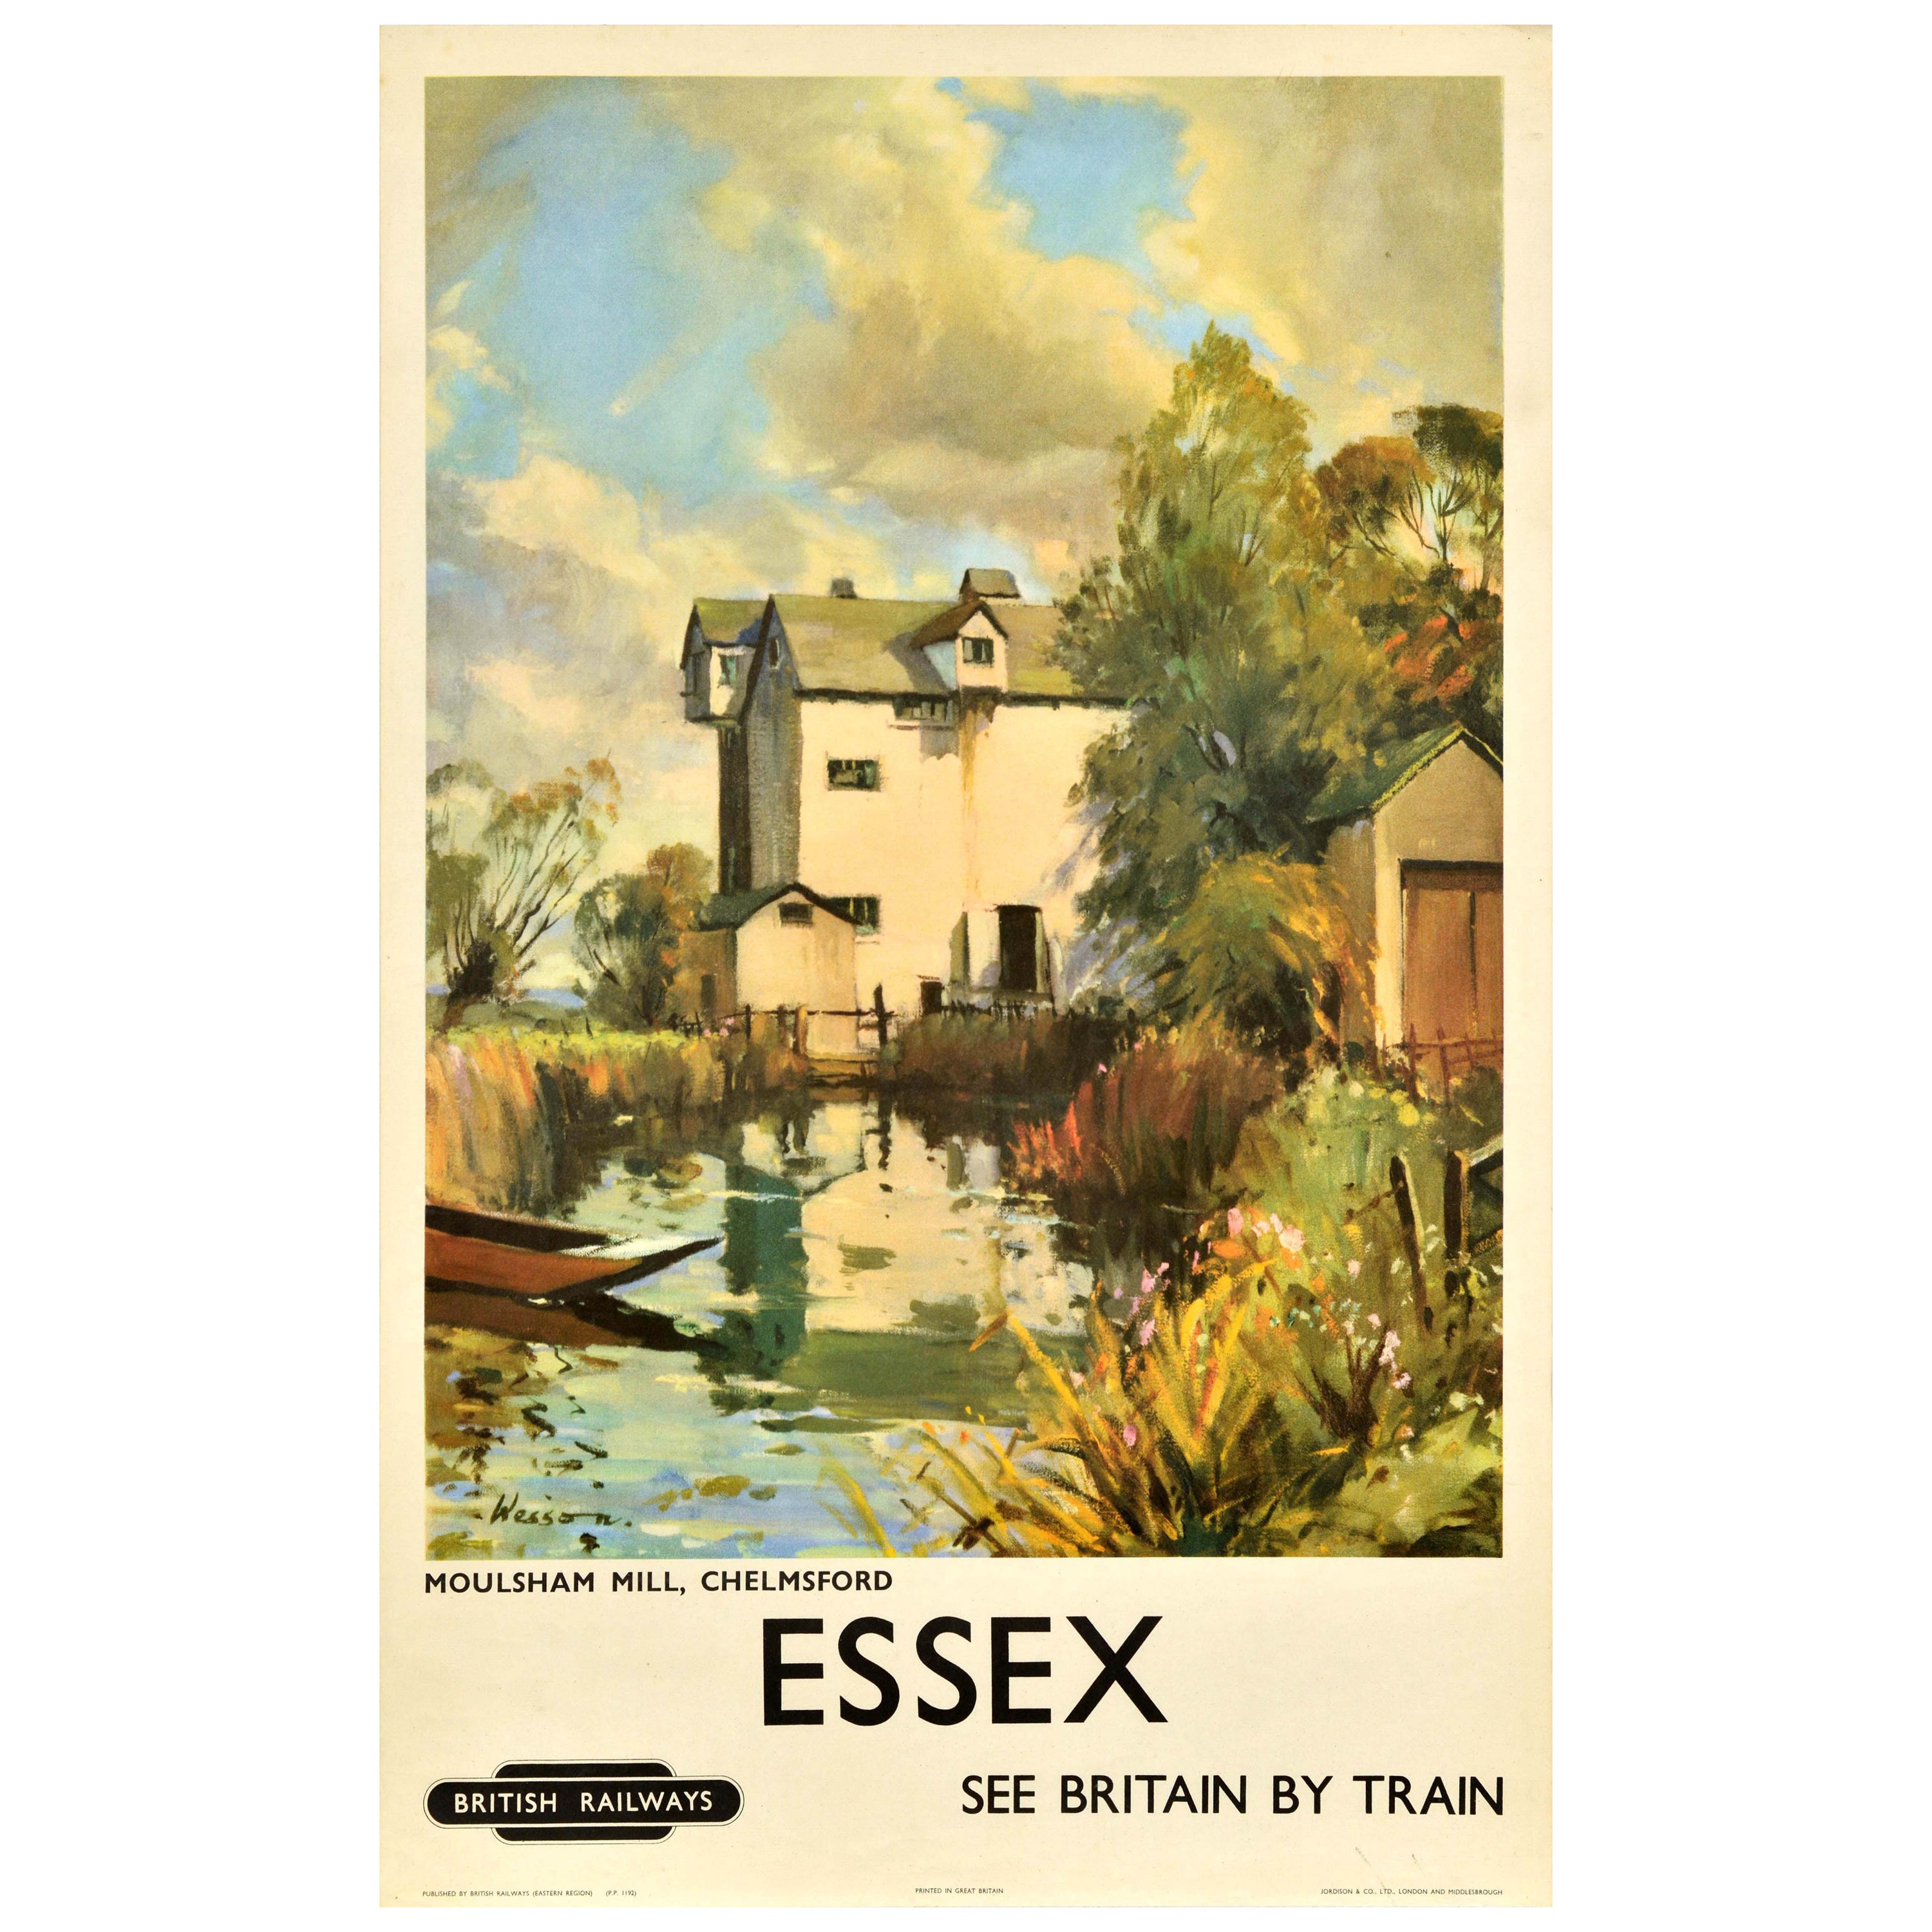 Original Vintage Travel Poster Essex Moulsham Mill Chelmsford British Railways